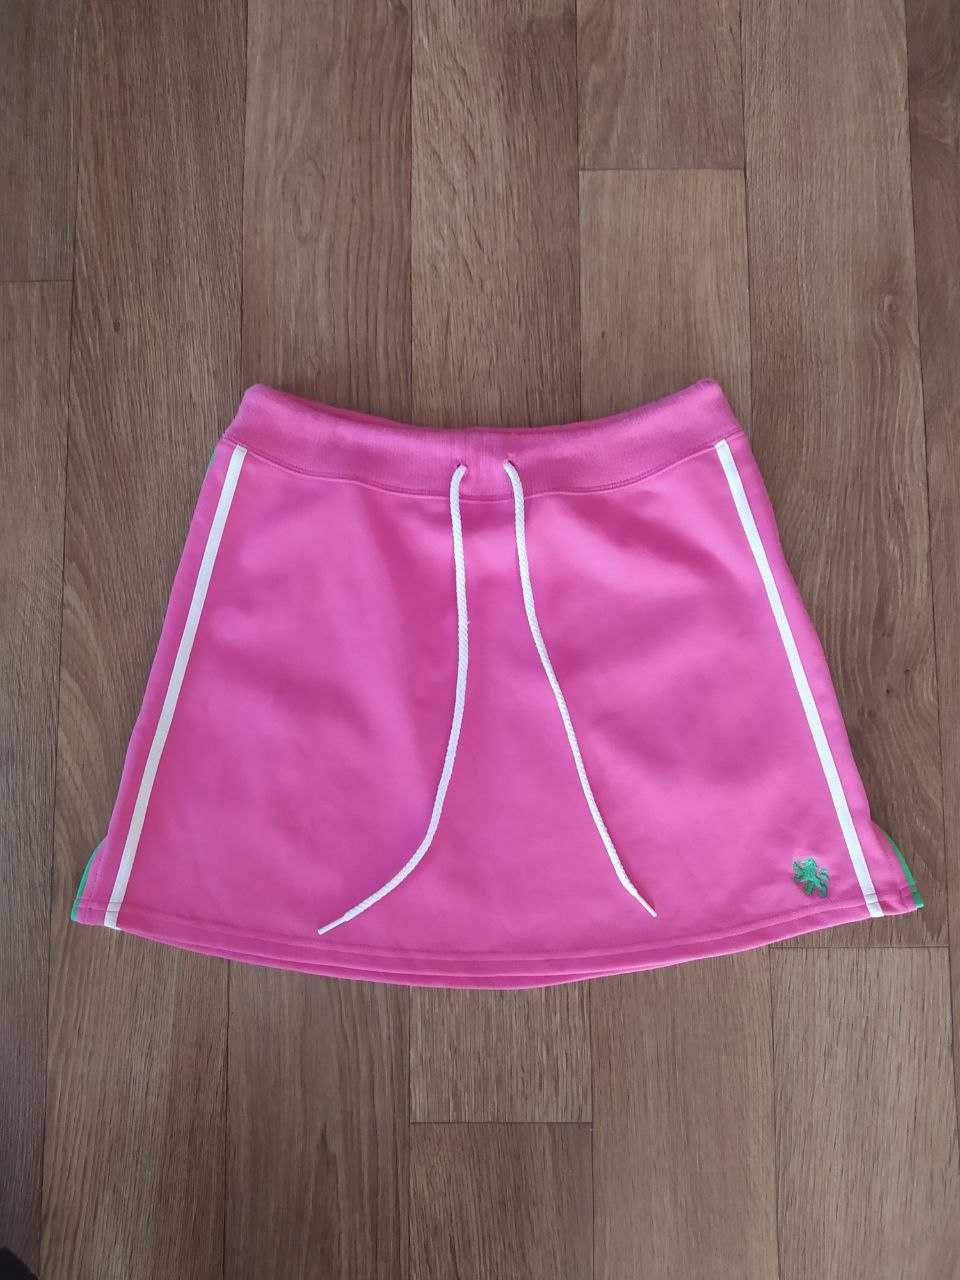 Женская спортивная юбка Tommy Hilfiger Размер  S